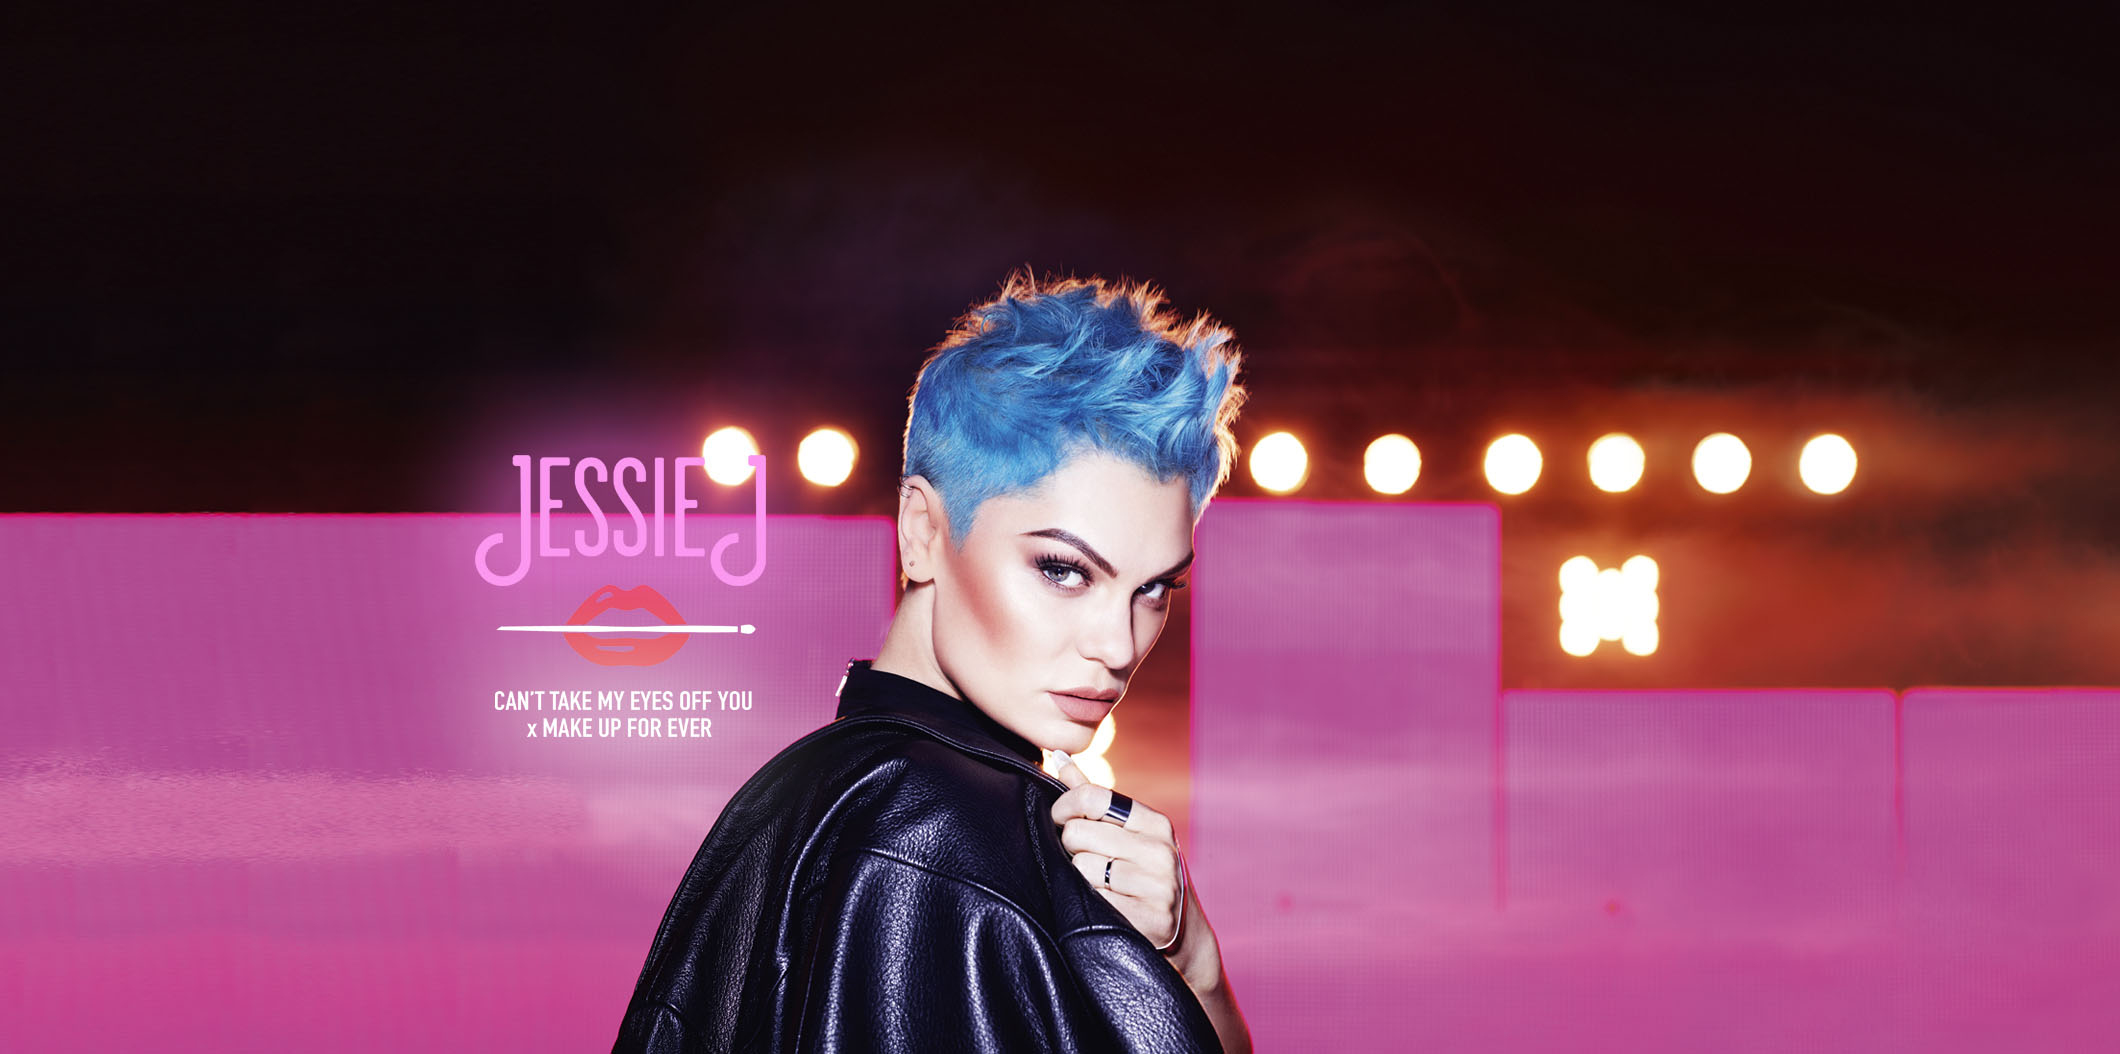 Jessie J makeup forever